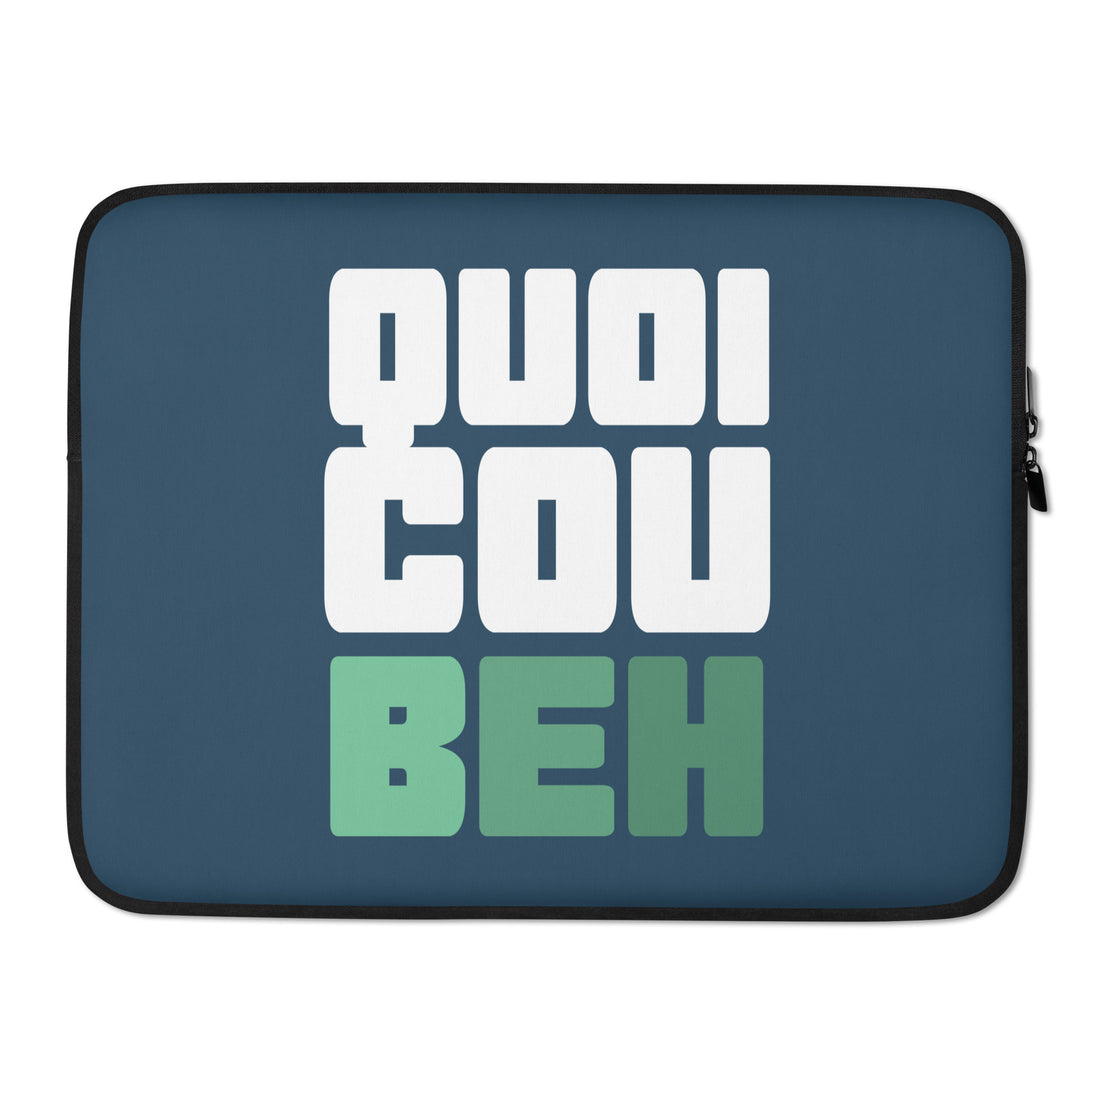 Quoicoubeh - Housse Pour Ordinateur Portable